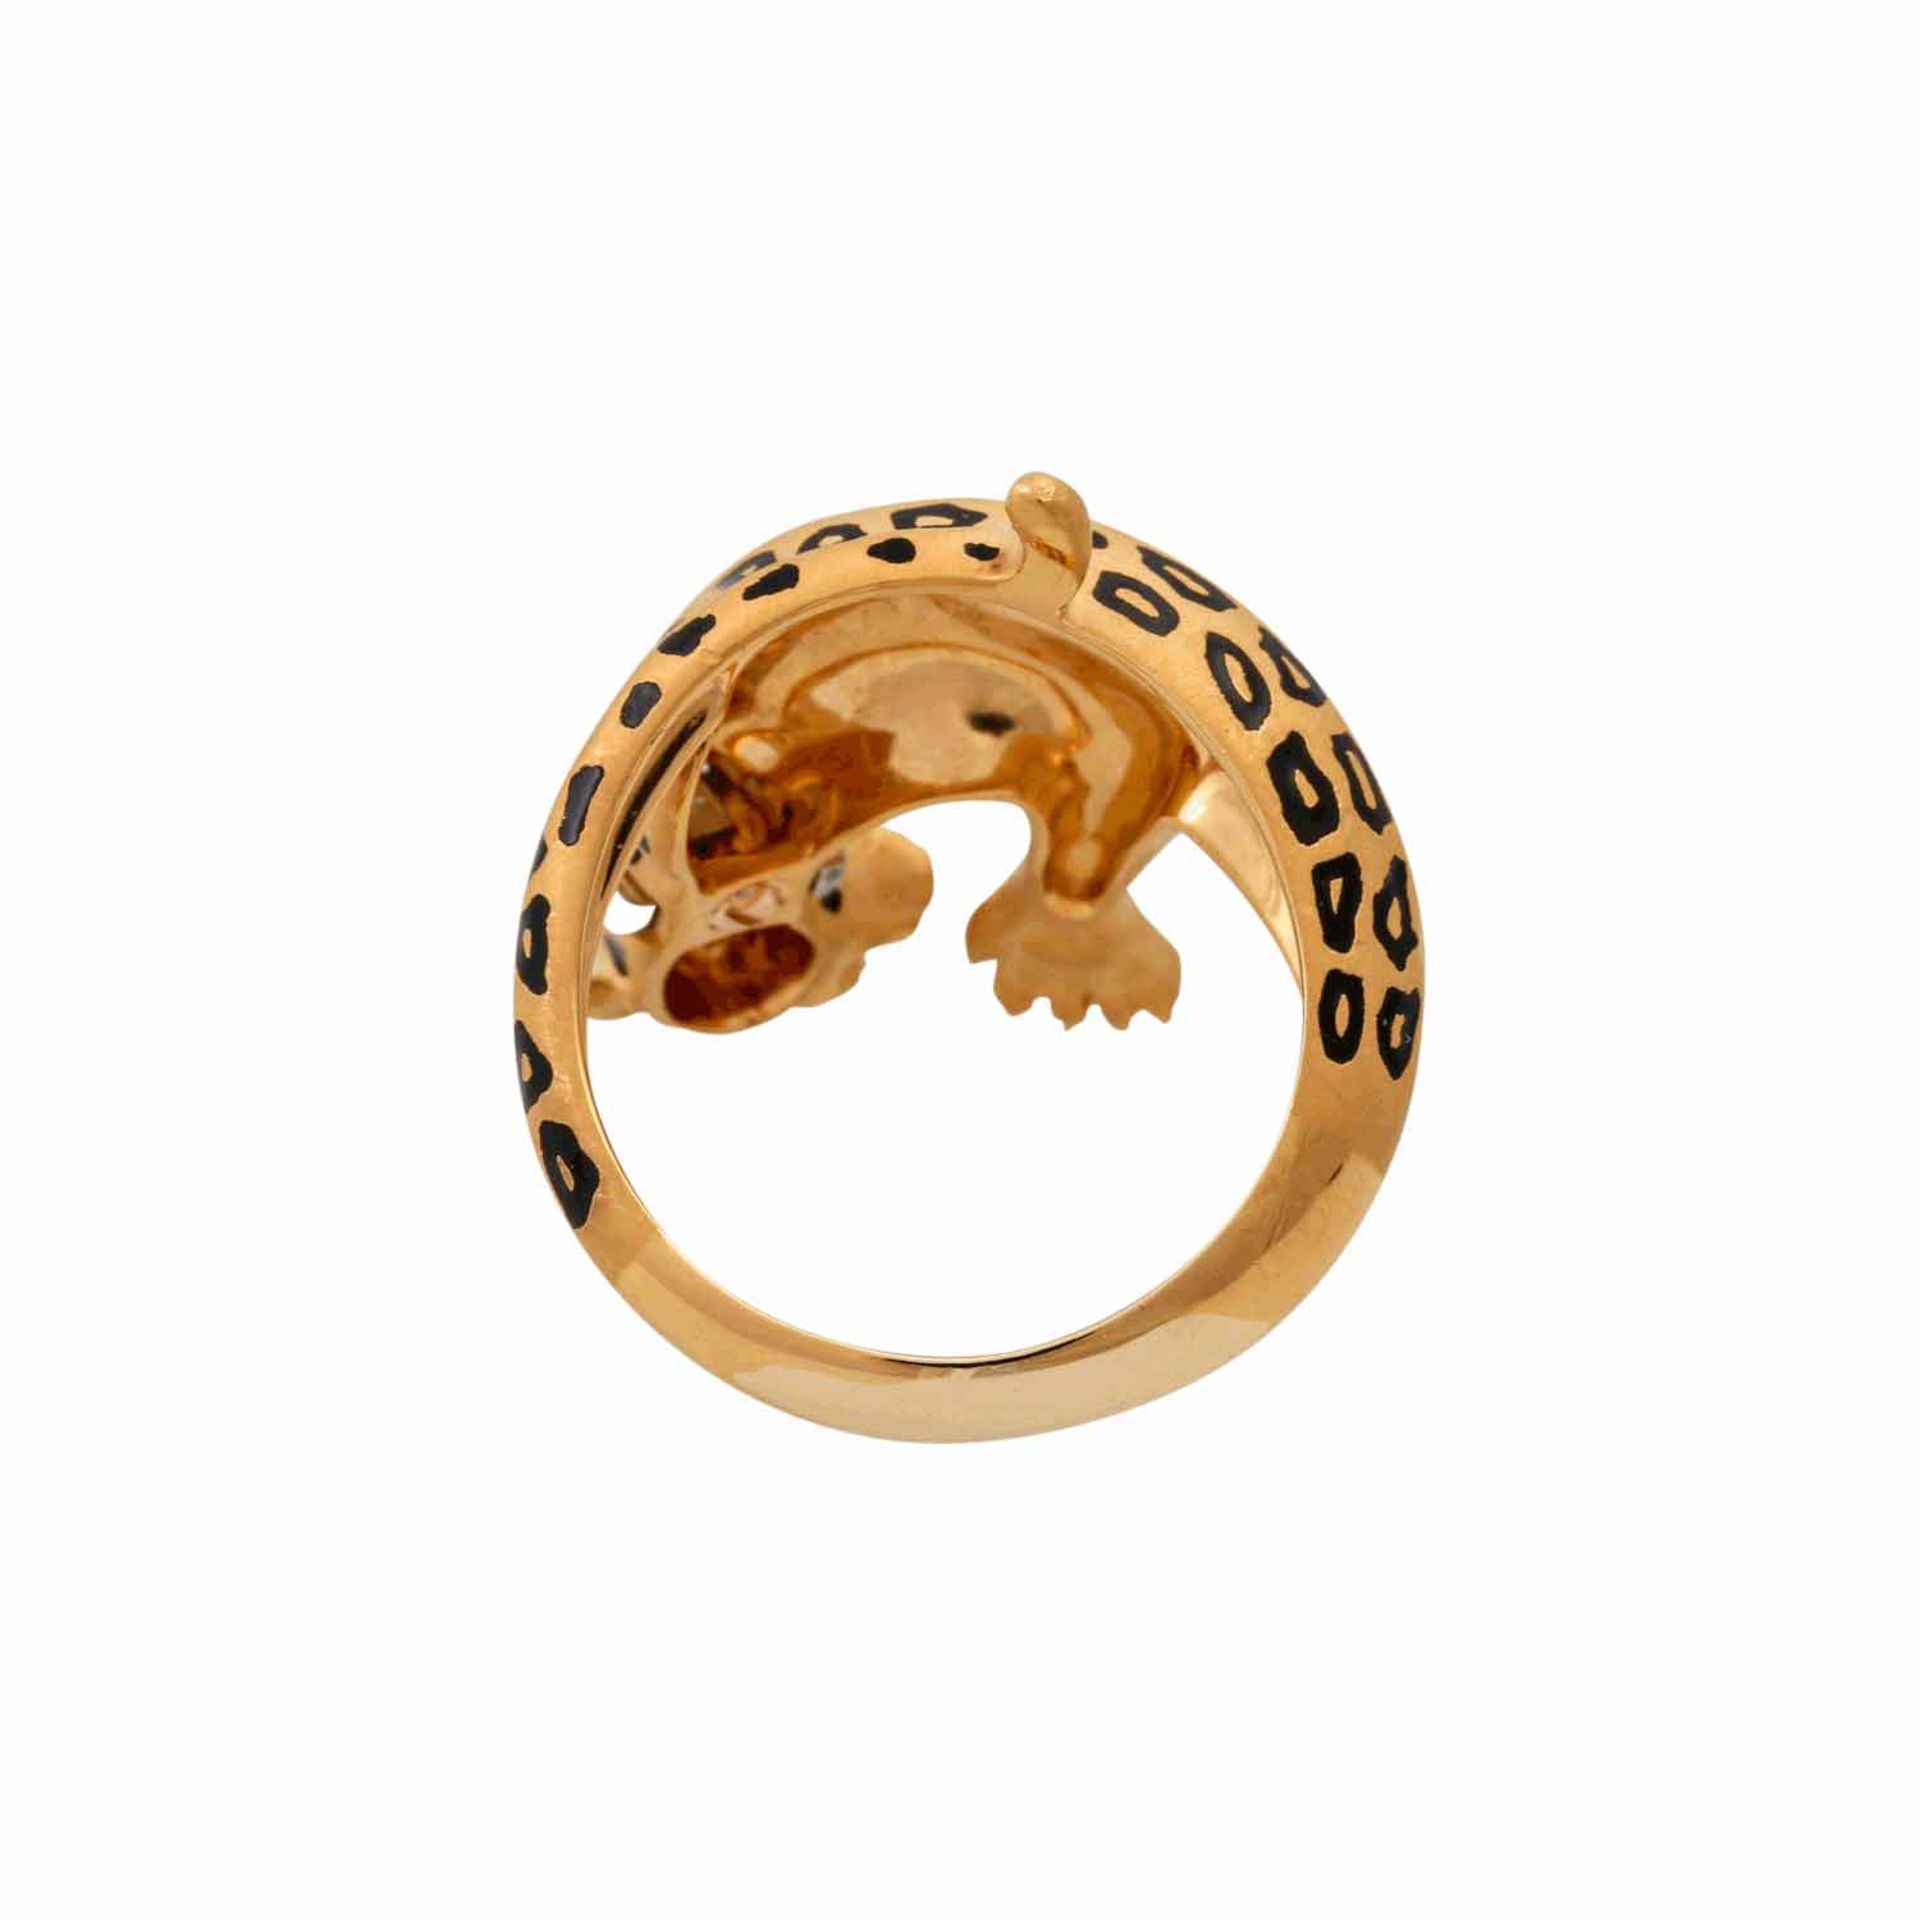 CARRERA Y CARRERA Ring "Panther"mit Brillanten von ca. 0,05 ct, 2 kl. Rubinen und sch - Image 4 of 5